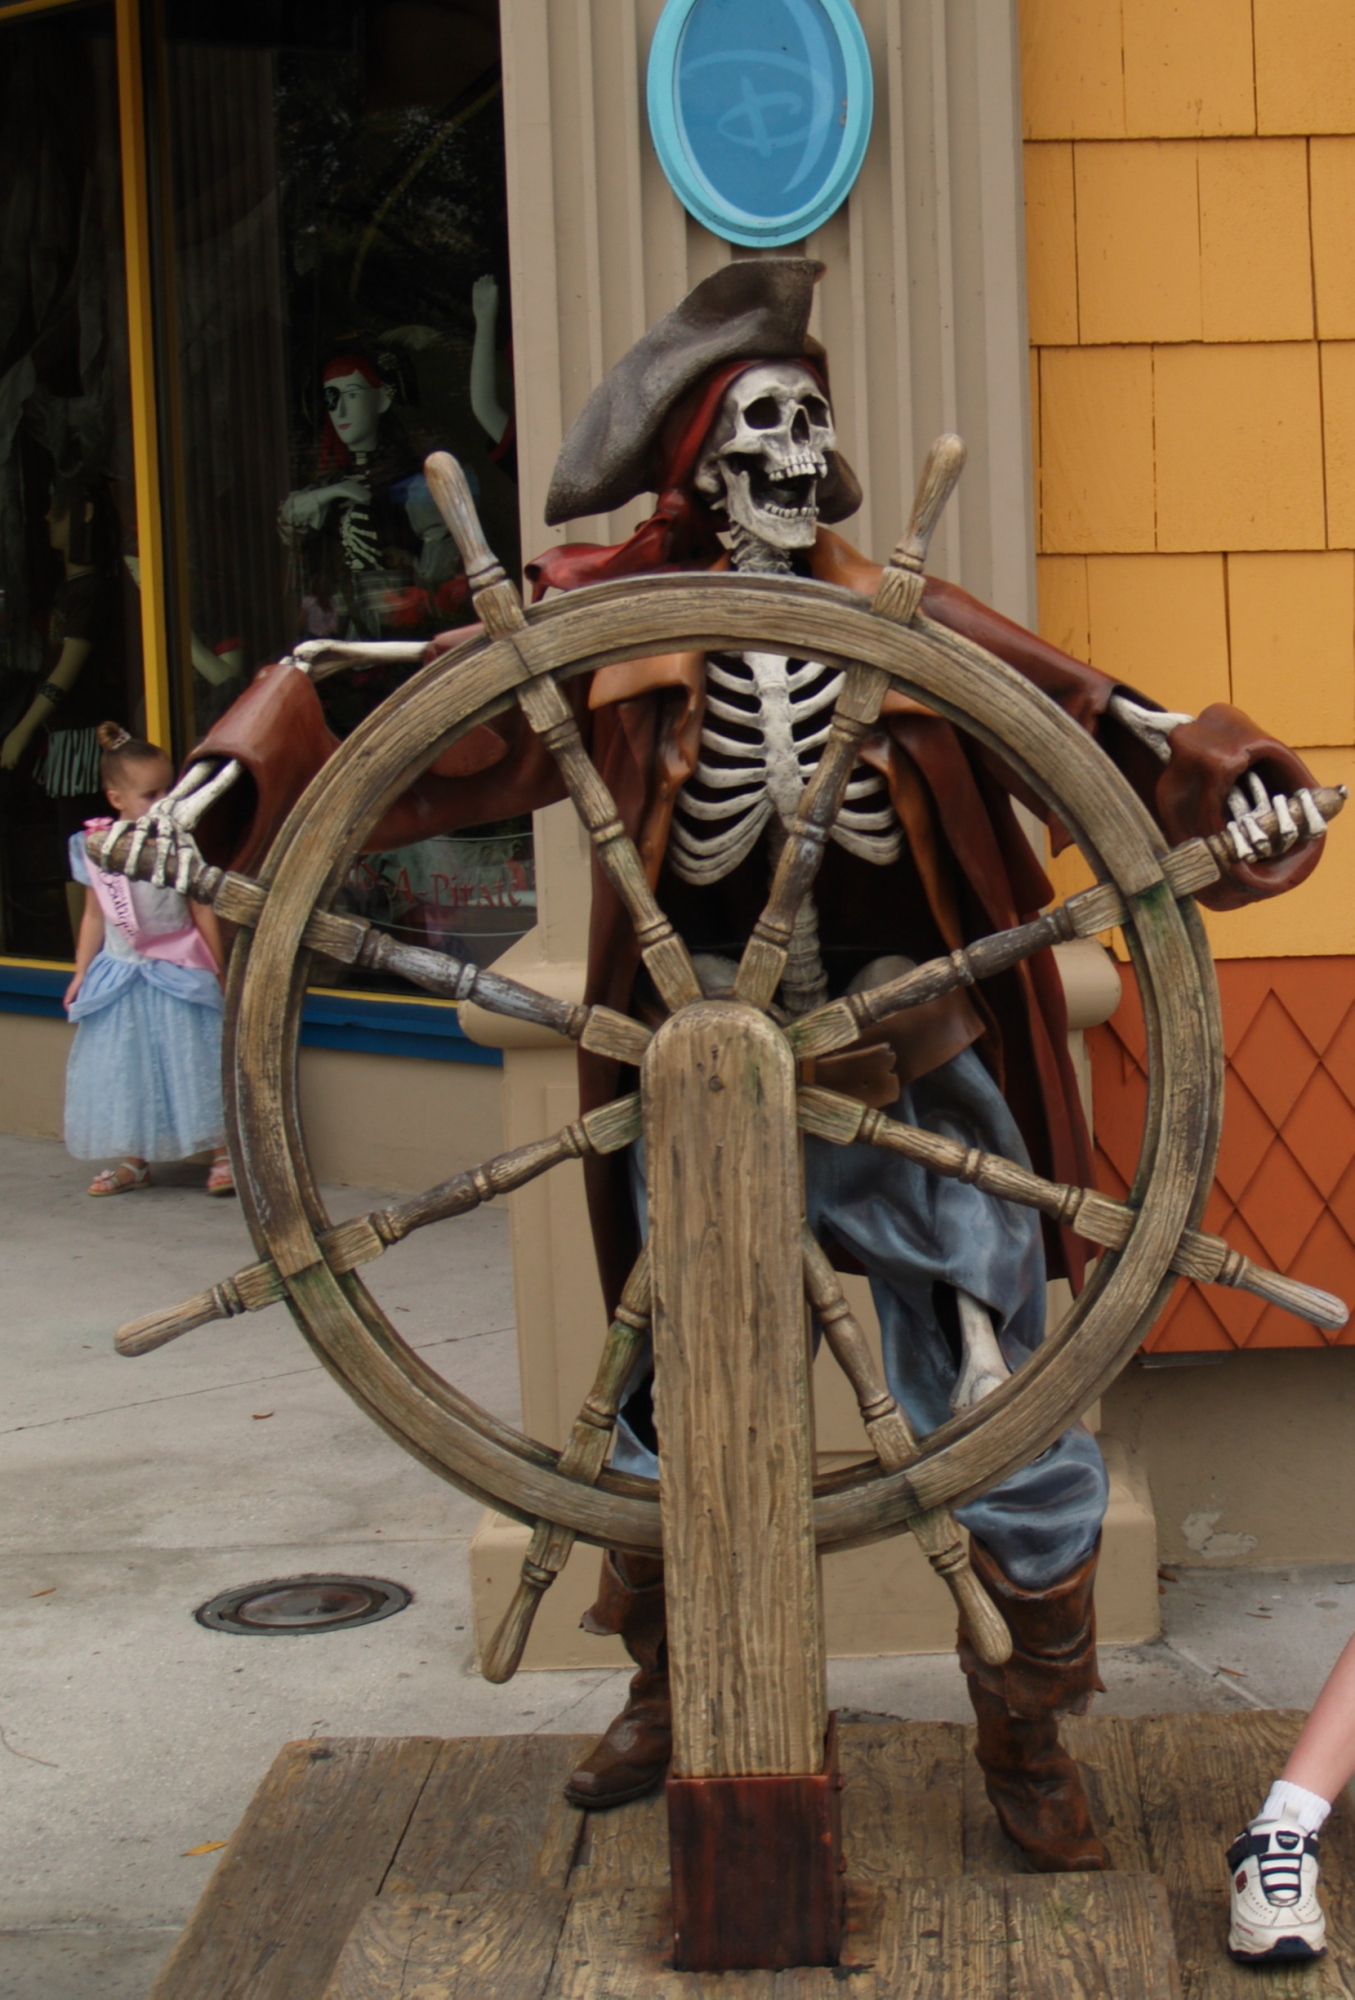 Downtown Disney - Pirate